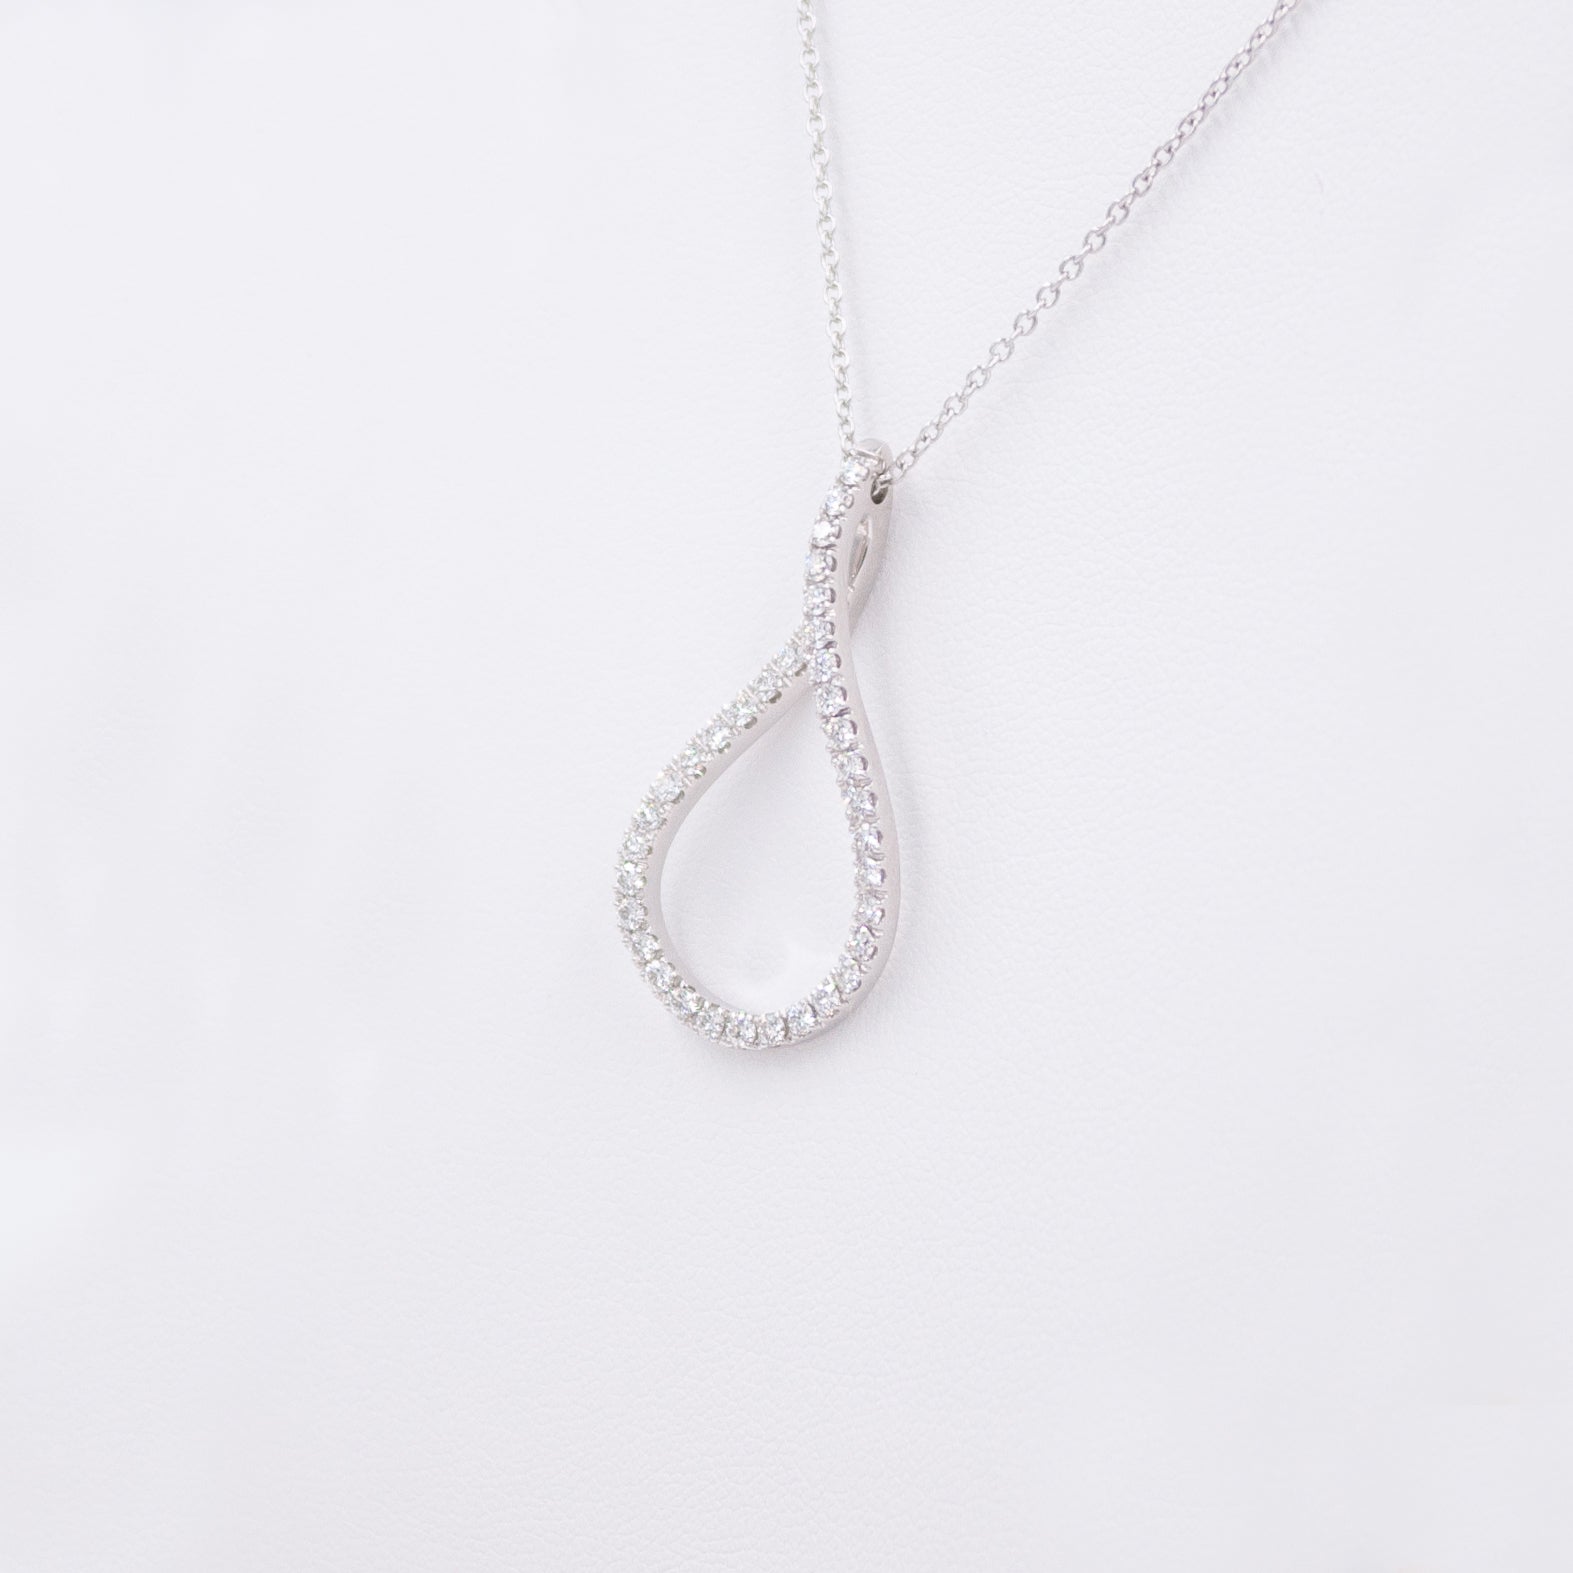 Virgo Necklace with Diamonds